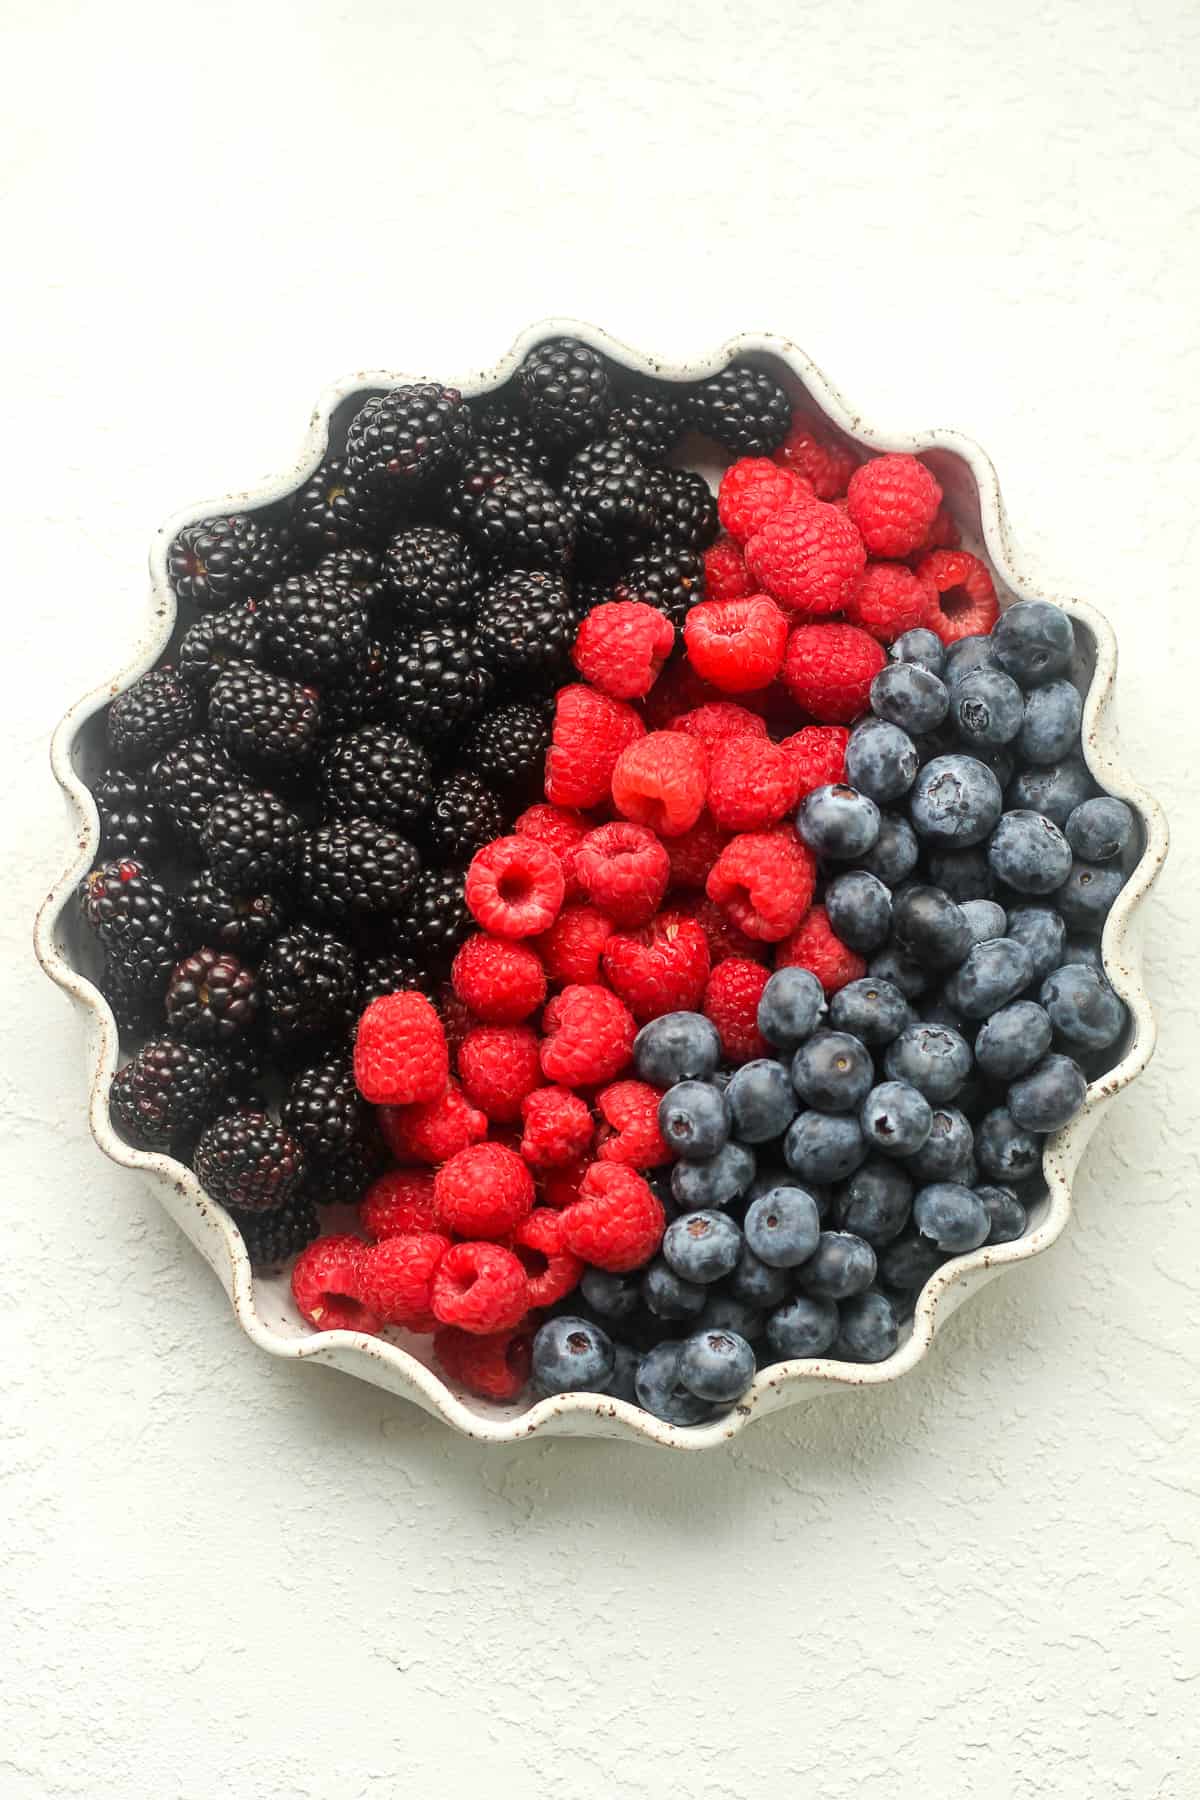 A plage of berries - blackberries, raspberries, and blueberries.